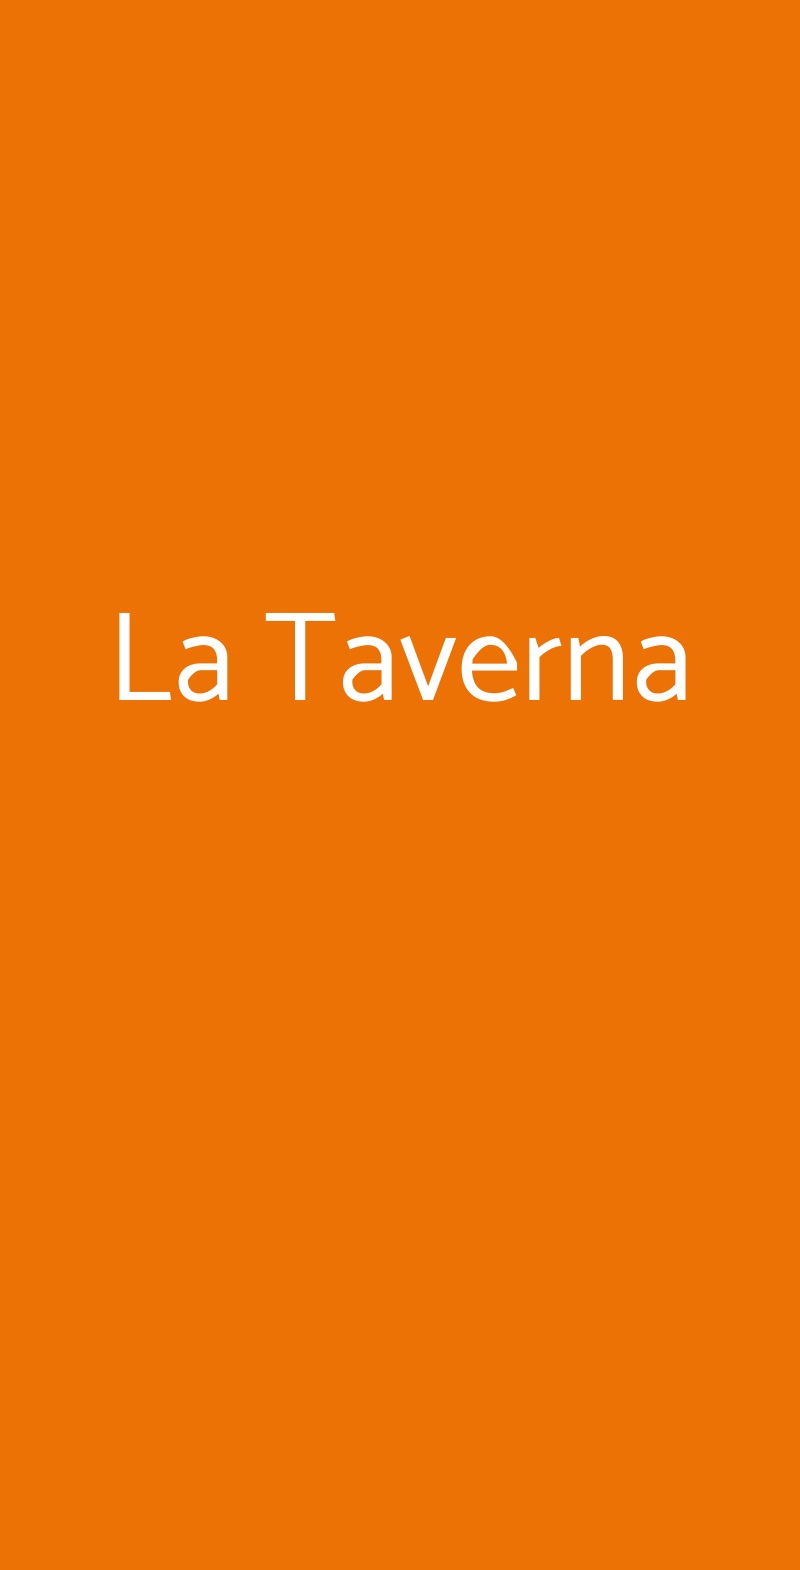 La Taverna Rocca Massima menù 1 pagina